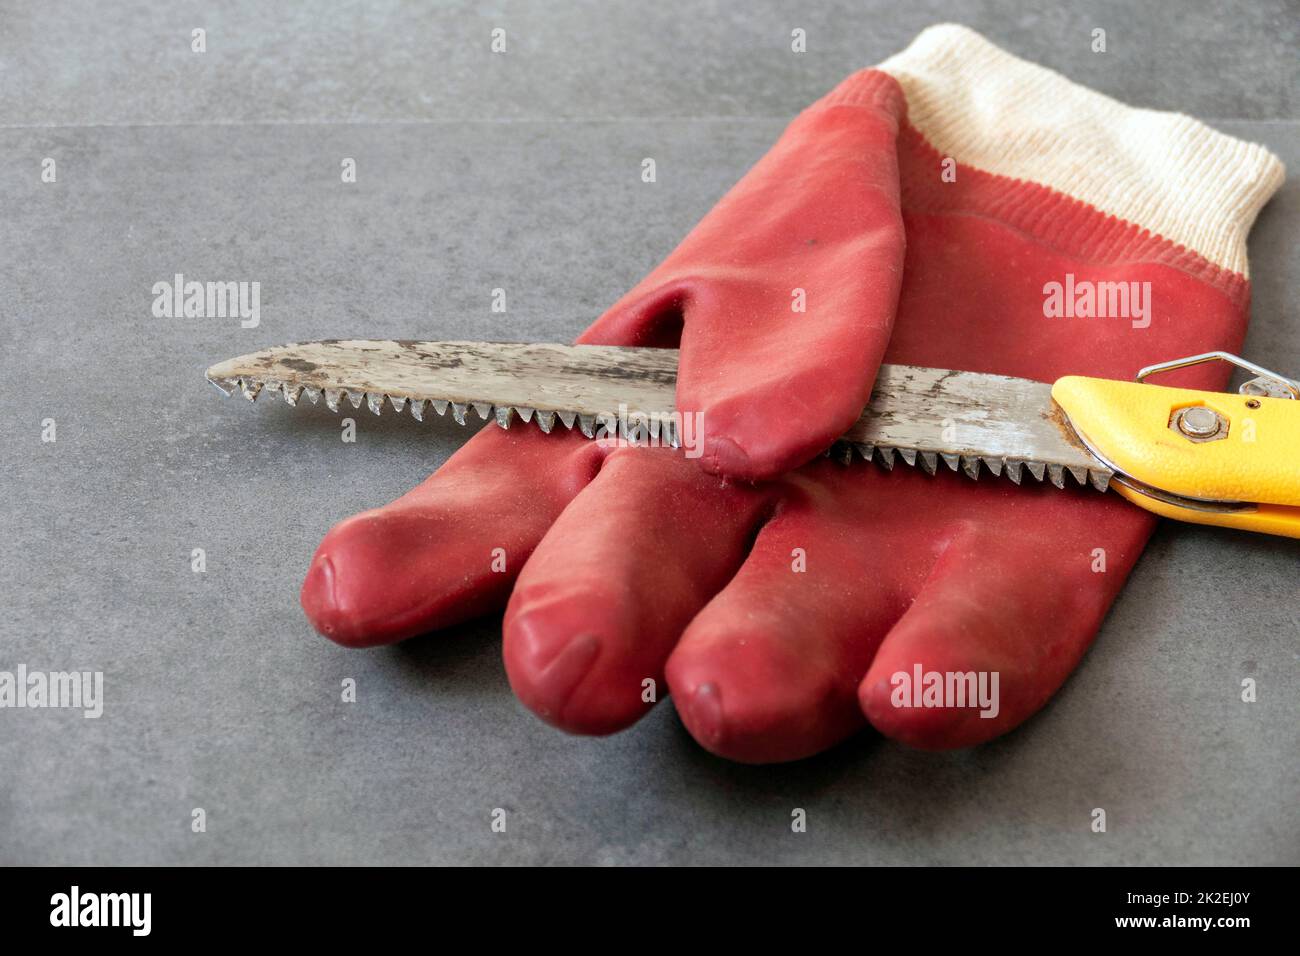 utilisation de gants pour éviter les blessures aux mains lors du travail dans la scie à atelier et de gants de travail épais Banque D'Images